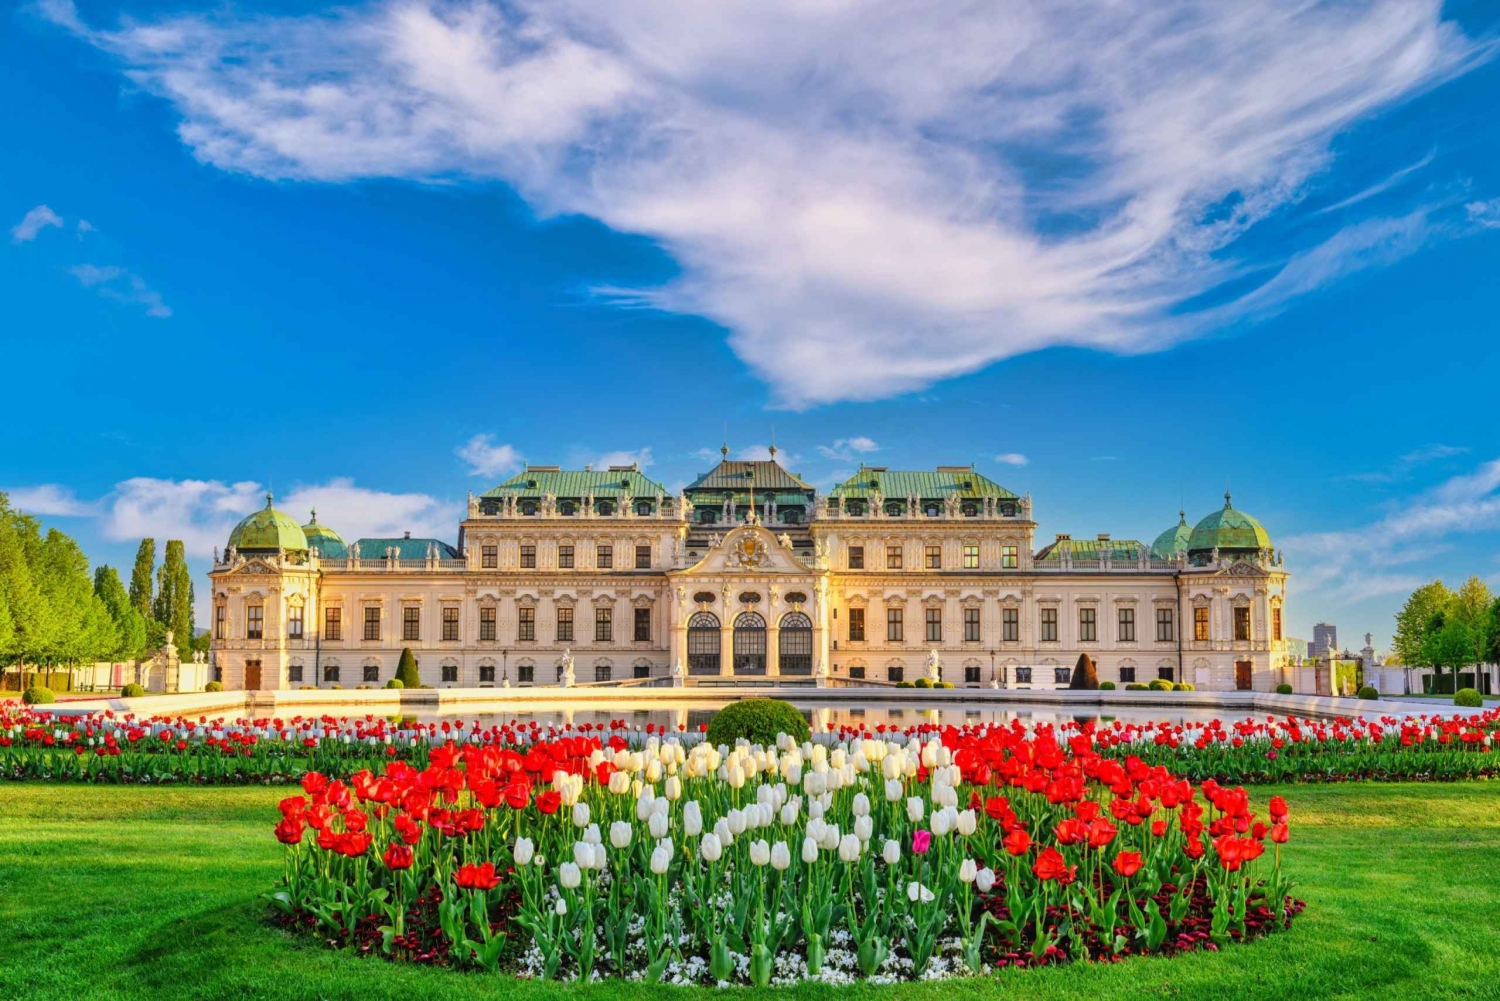 Hofburg,Sisi Museum,Schonbrunn, Belvedere Palace Vienna Tour